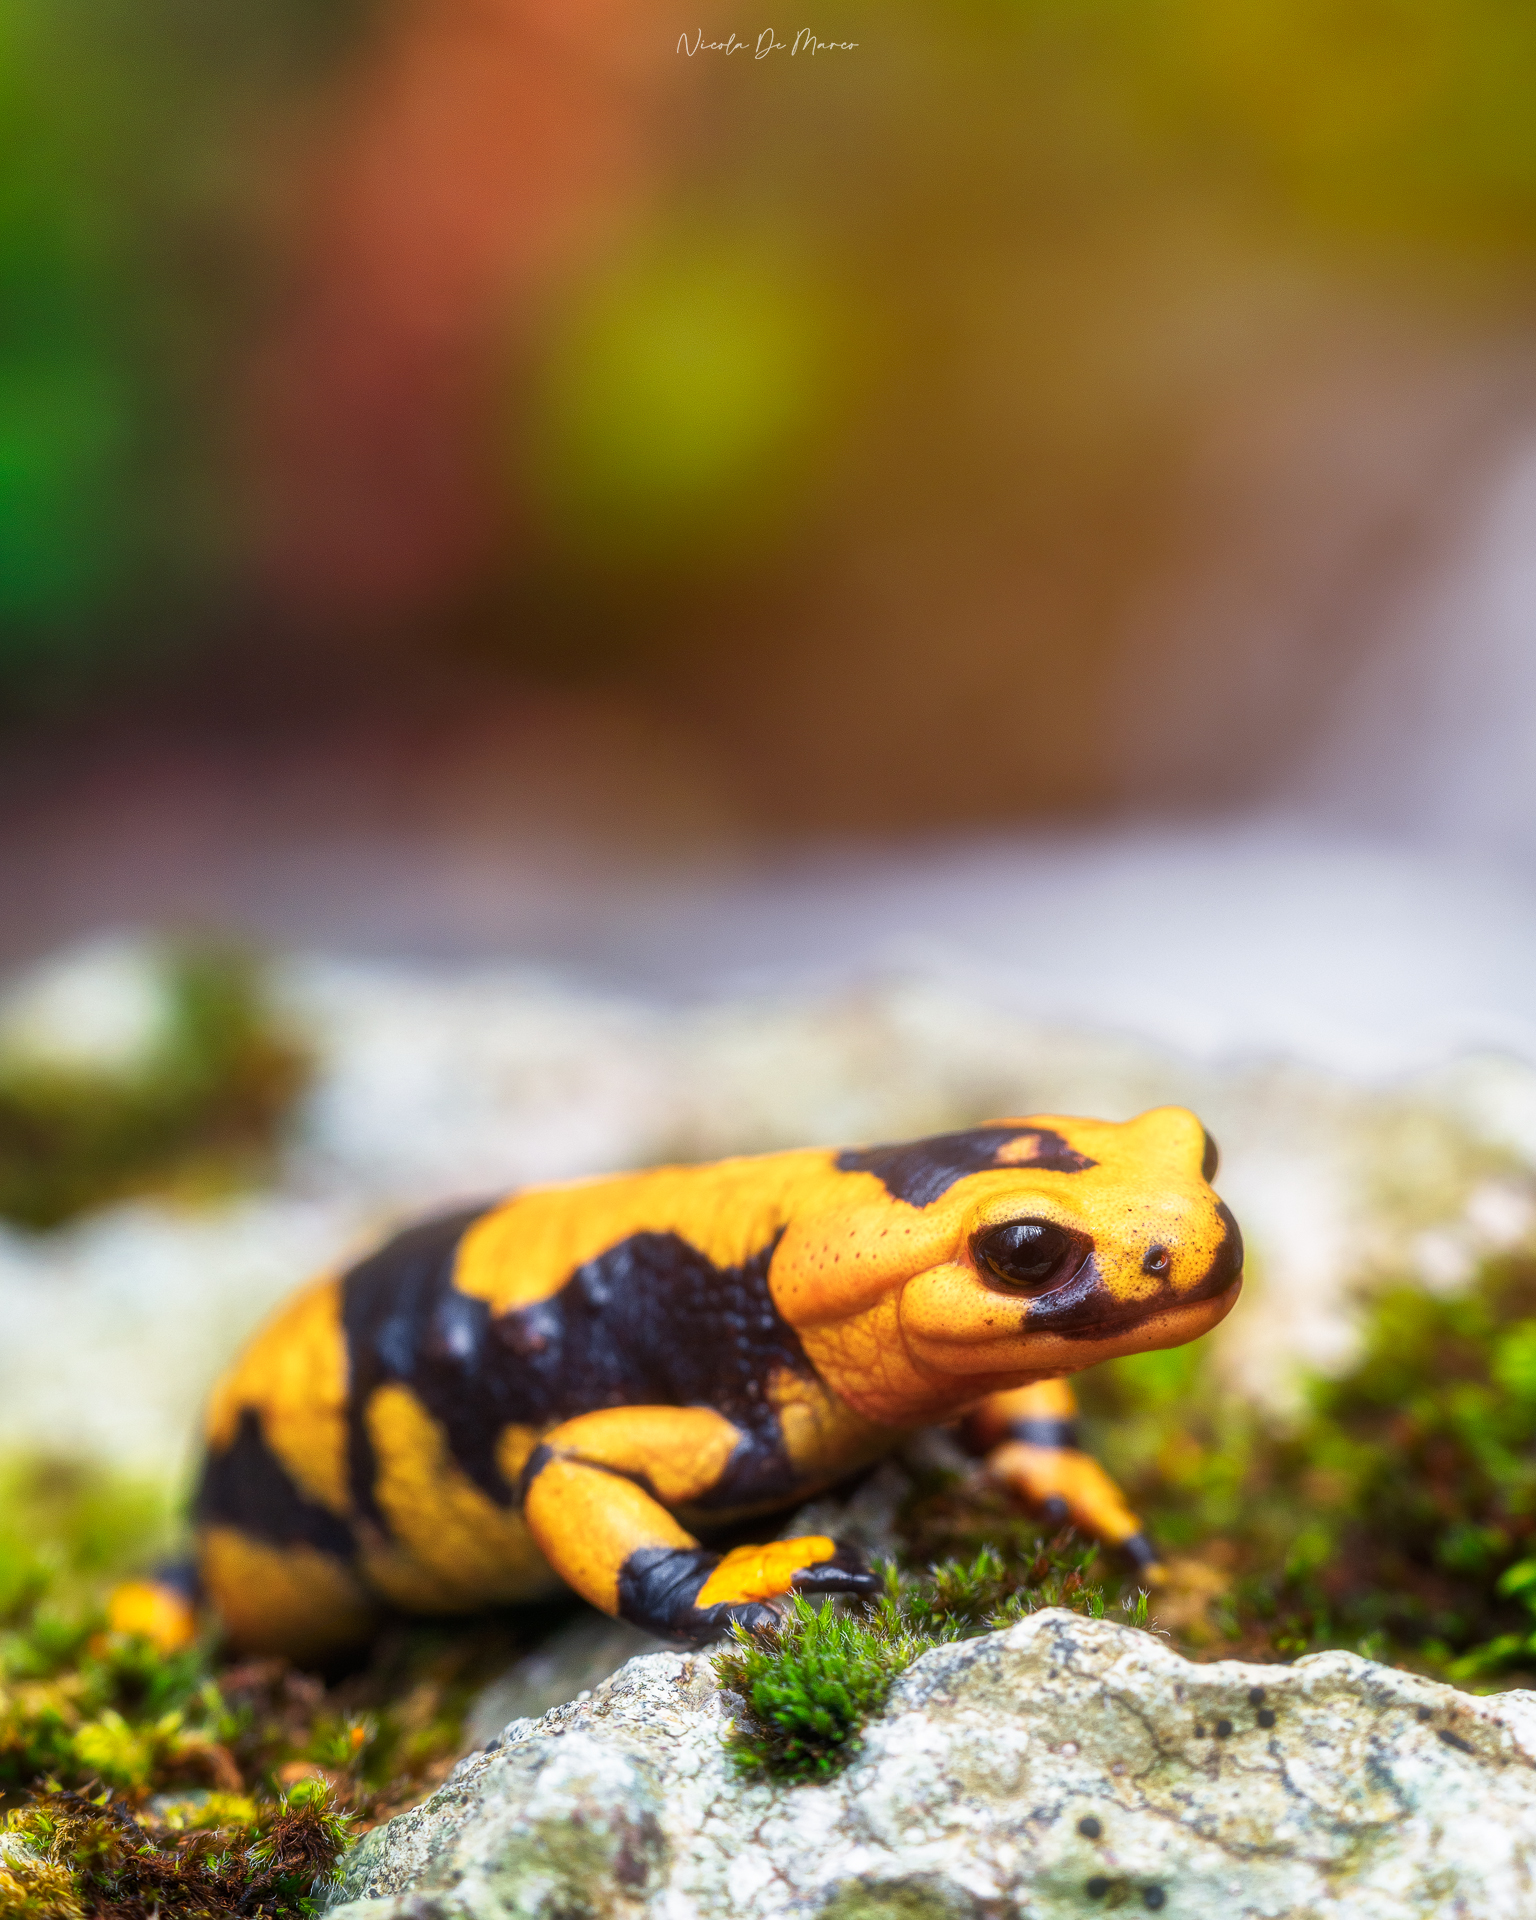 Spotted salamander (Salamandra salamandra gigliolii)...